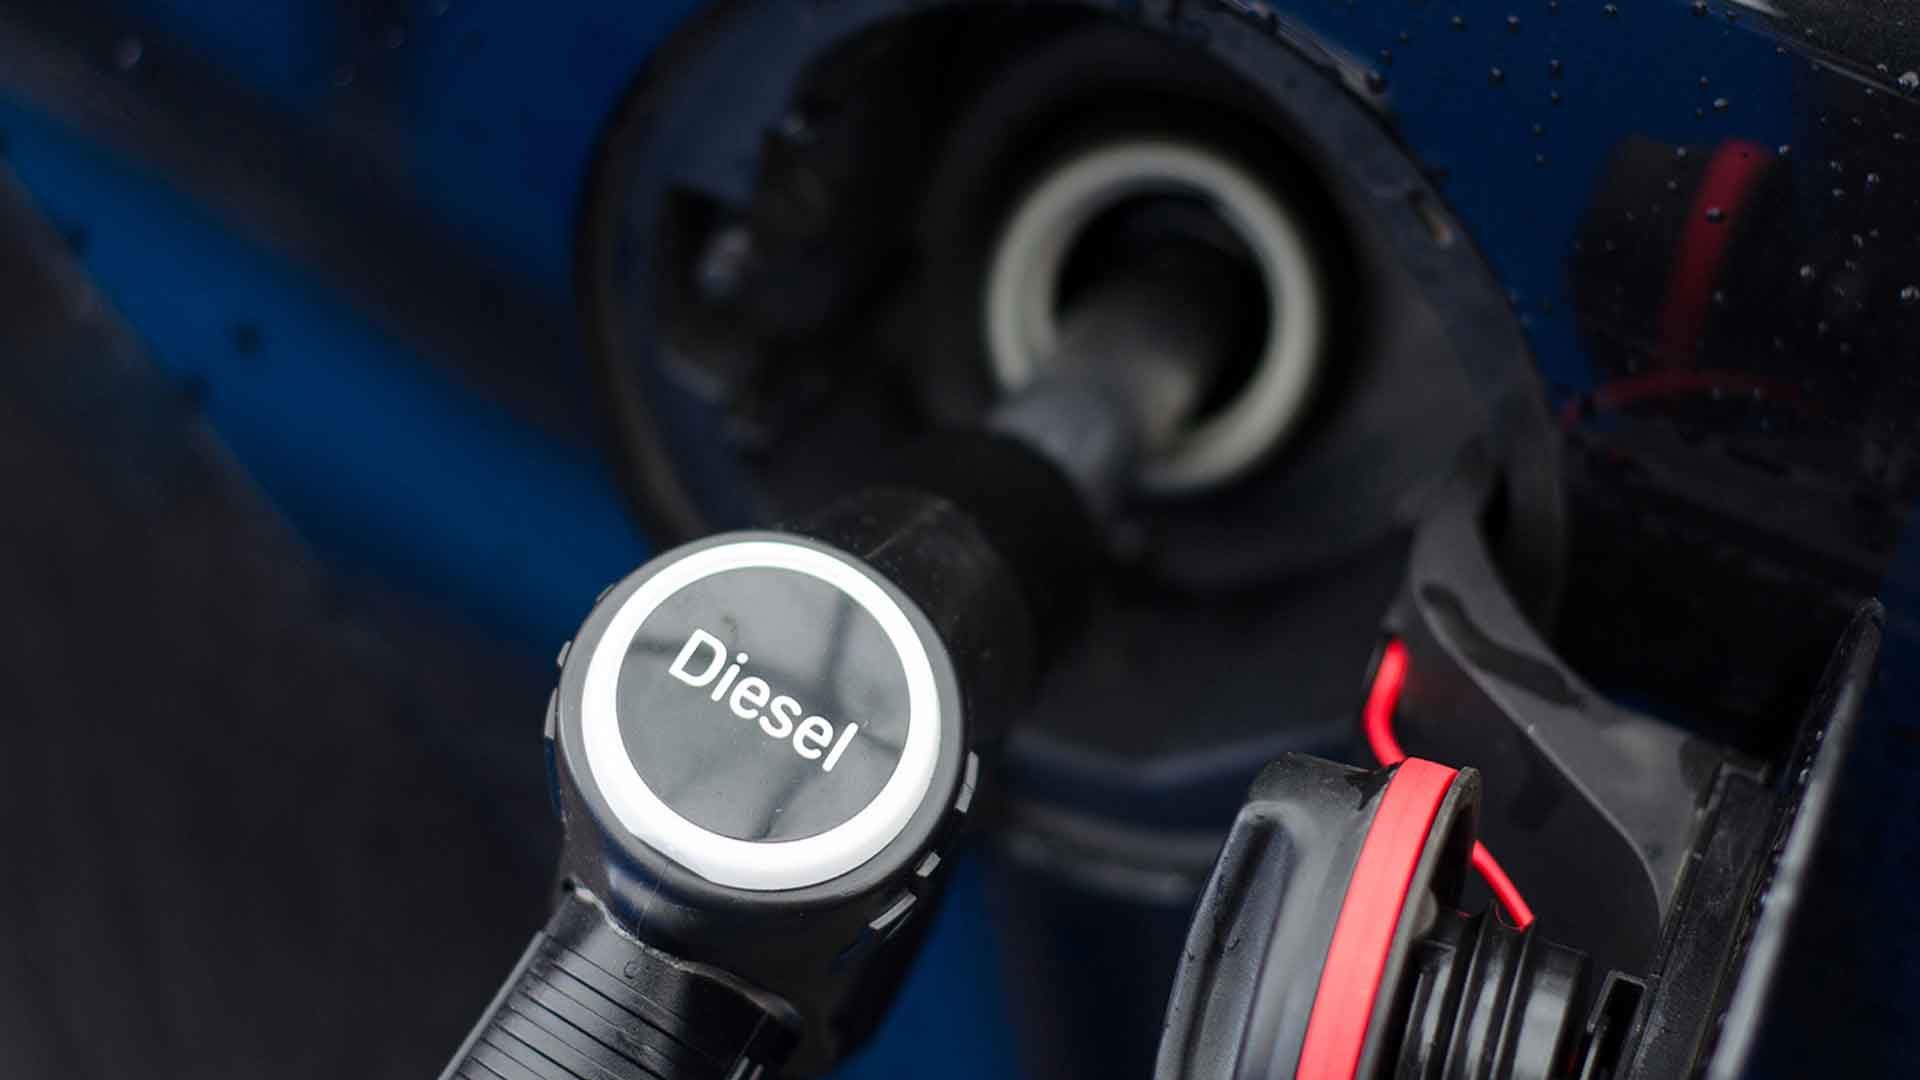 Diesel is too expensive